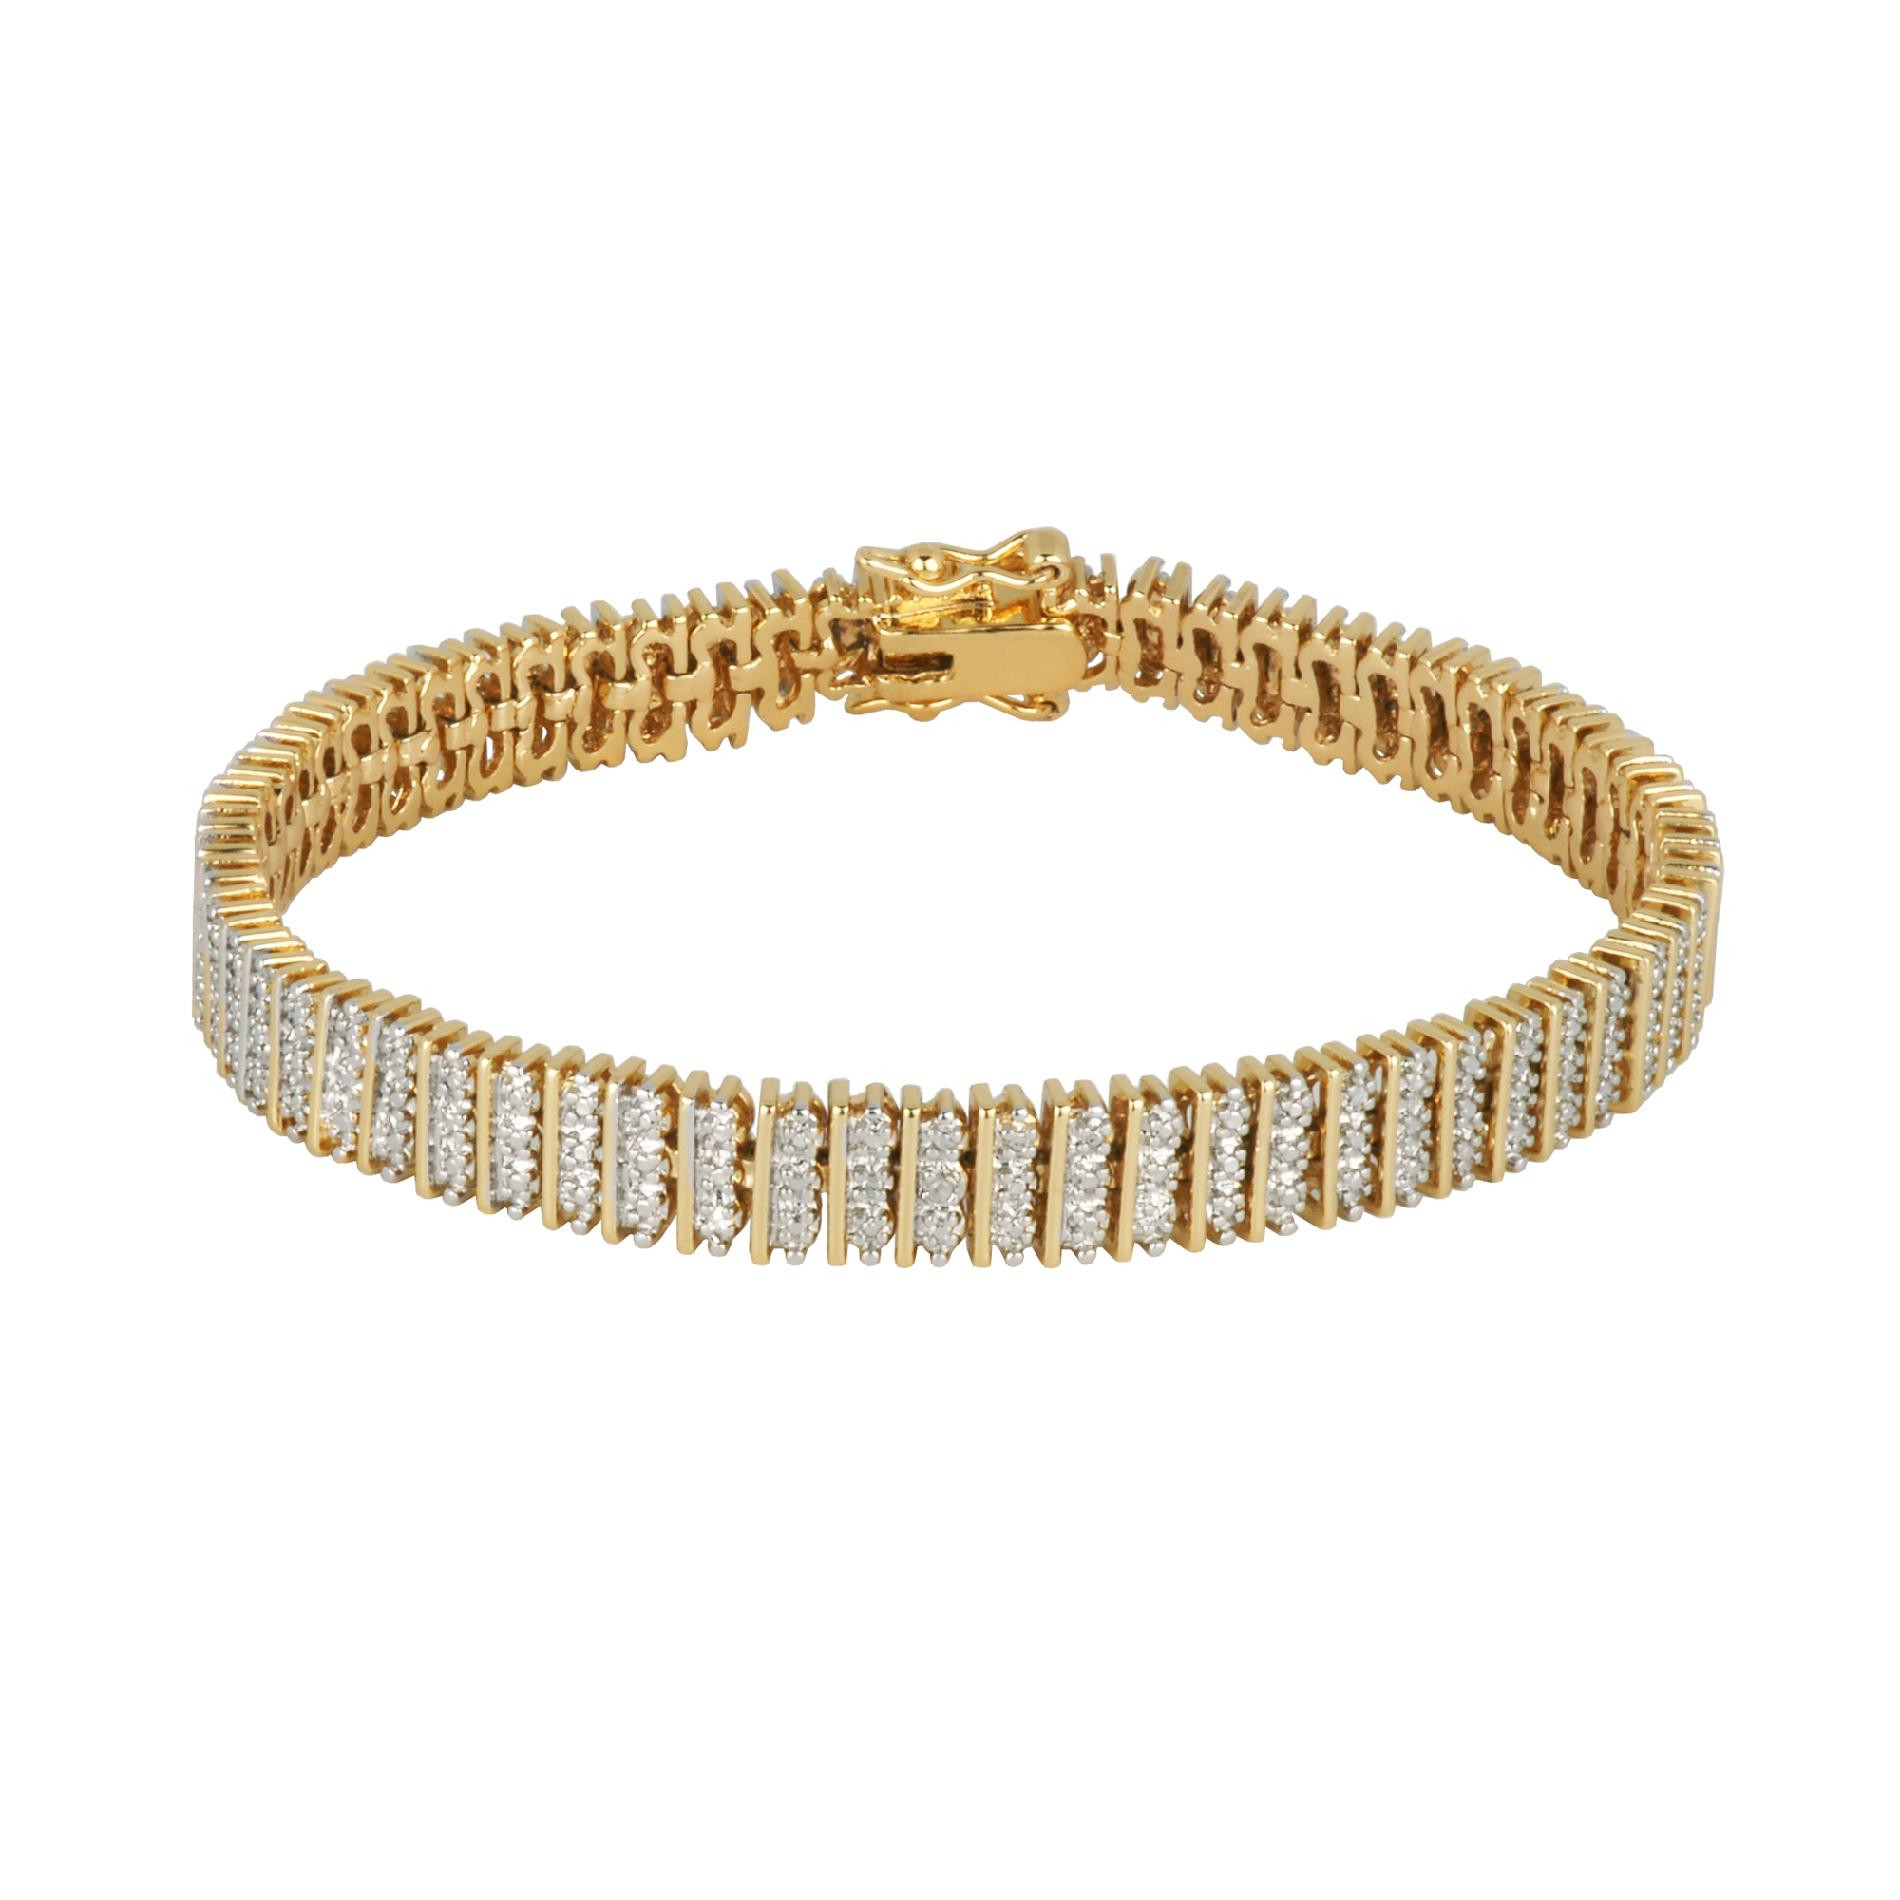 Kmart Jewelry Bracelets
 Fine Silver Gold Over Bronze Diamond Accent Bracelet 7 25